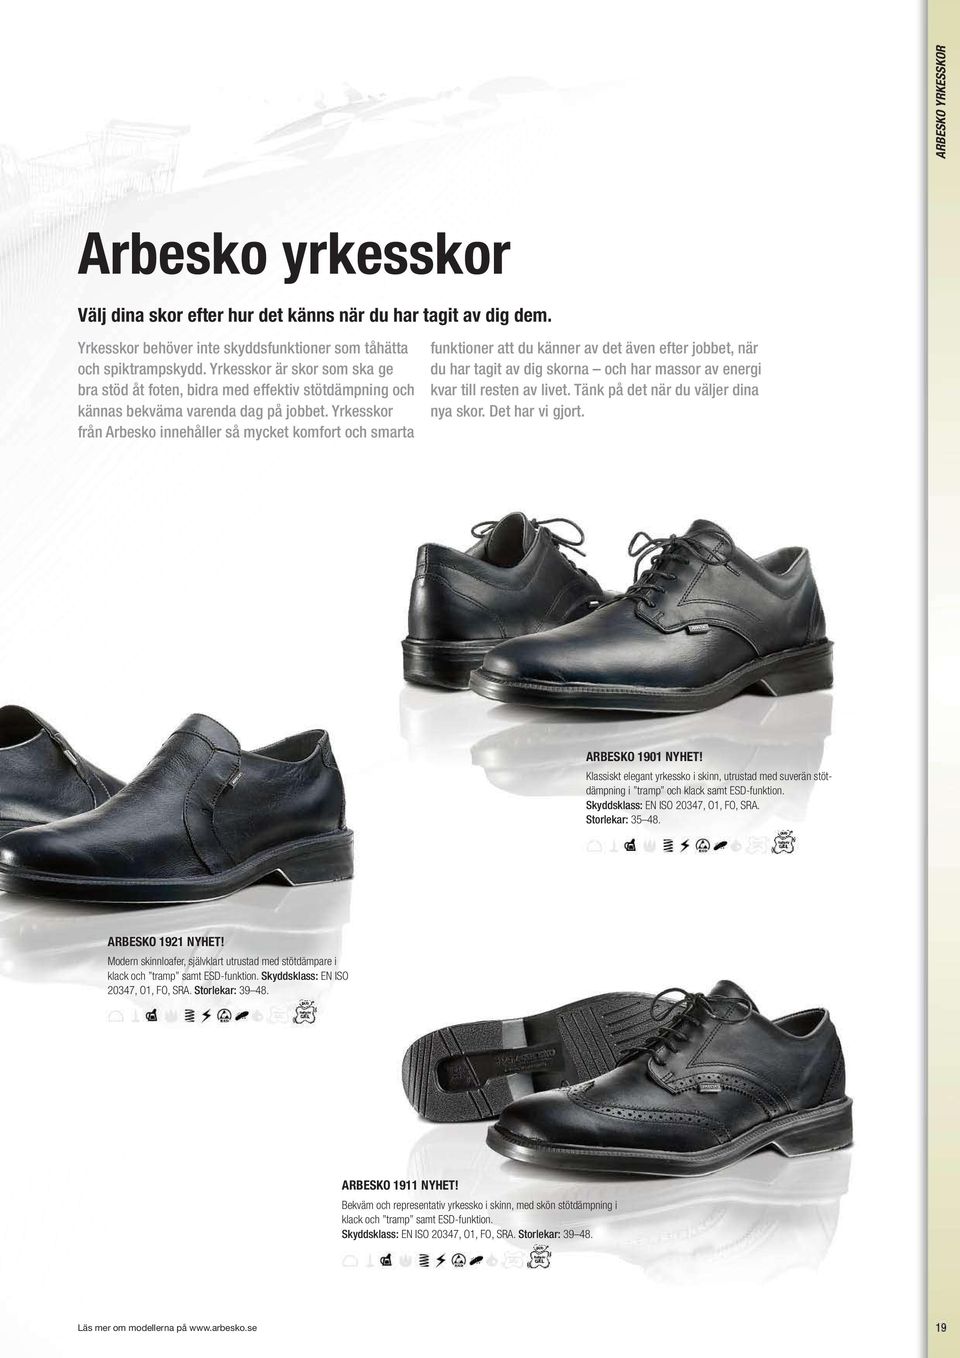 Yrkesskor från Arbesko innehåller så mycket komfort och smarta funktioner att du känner av det även efter jobbet, när du har tagit av dig skorna och har massor av energi kvar till resten av livet.